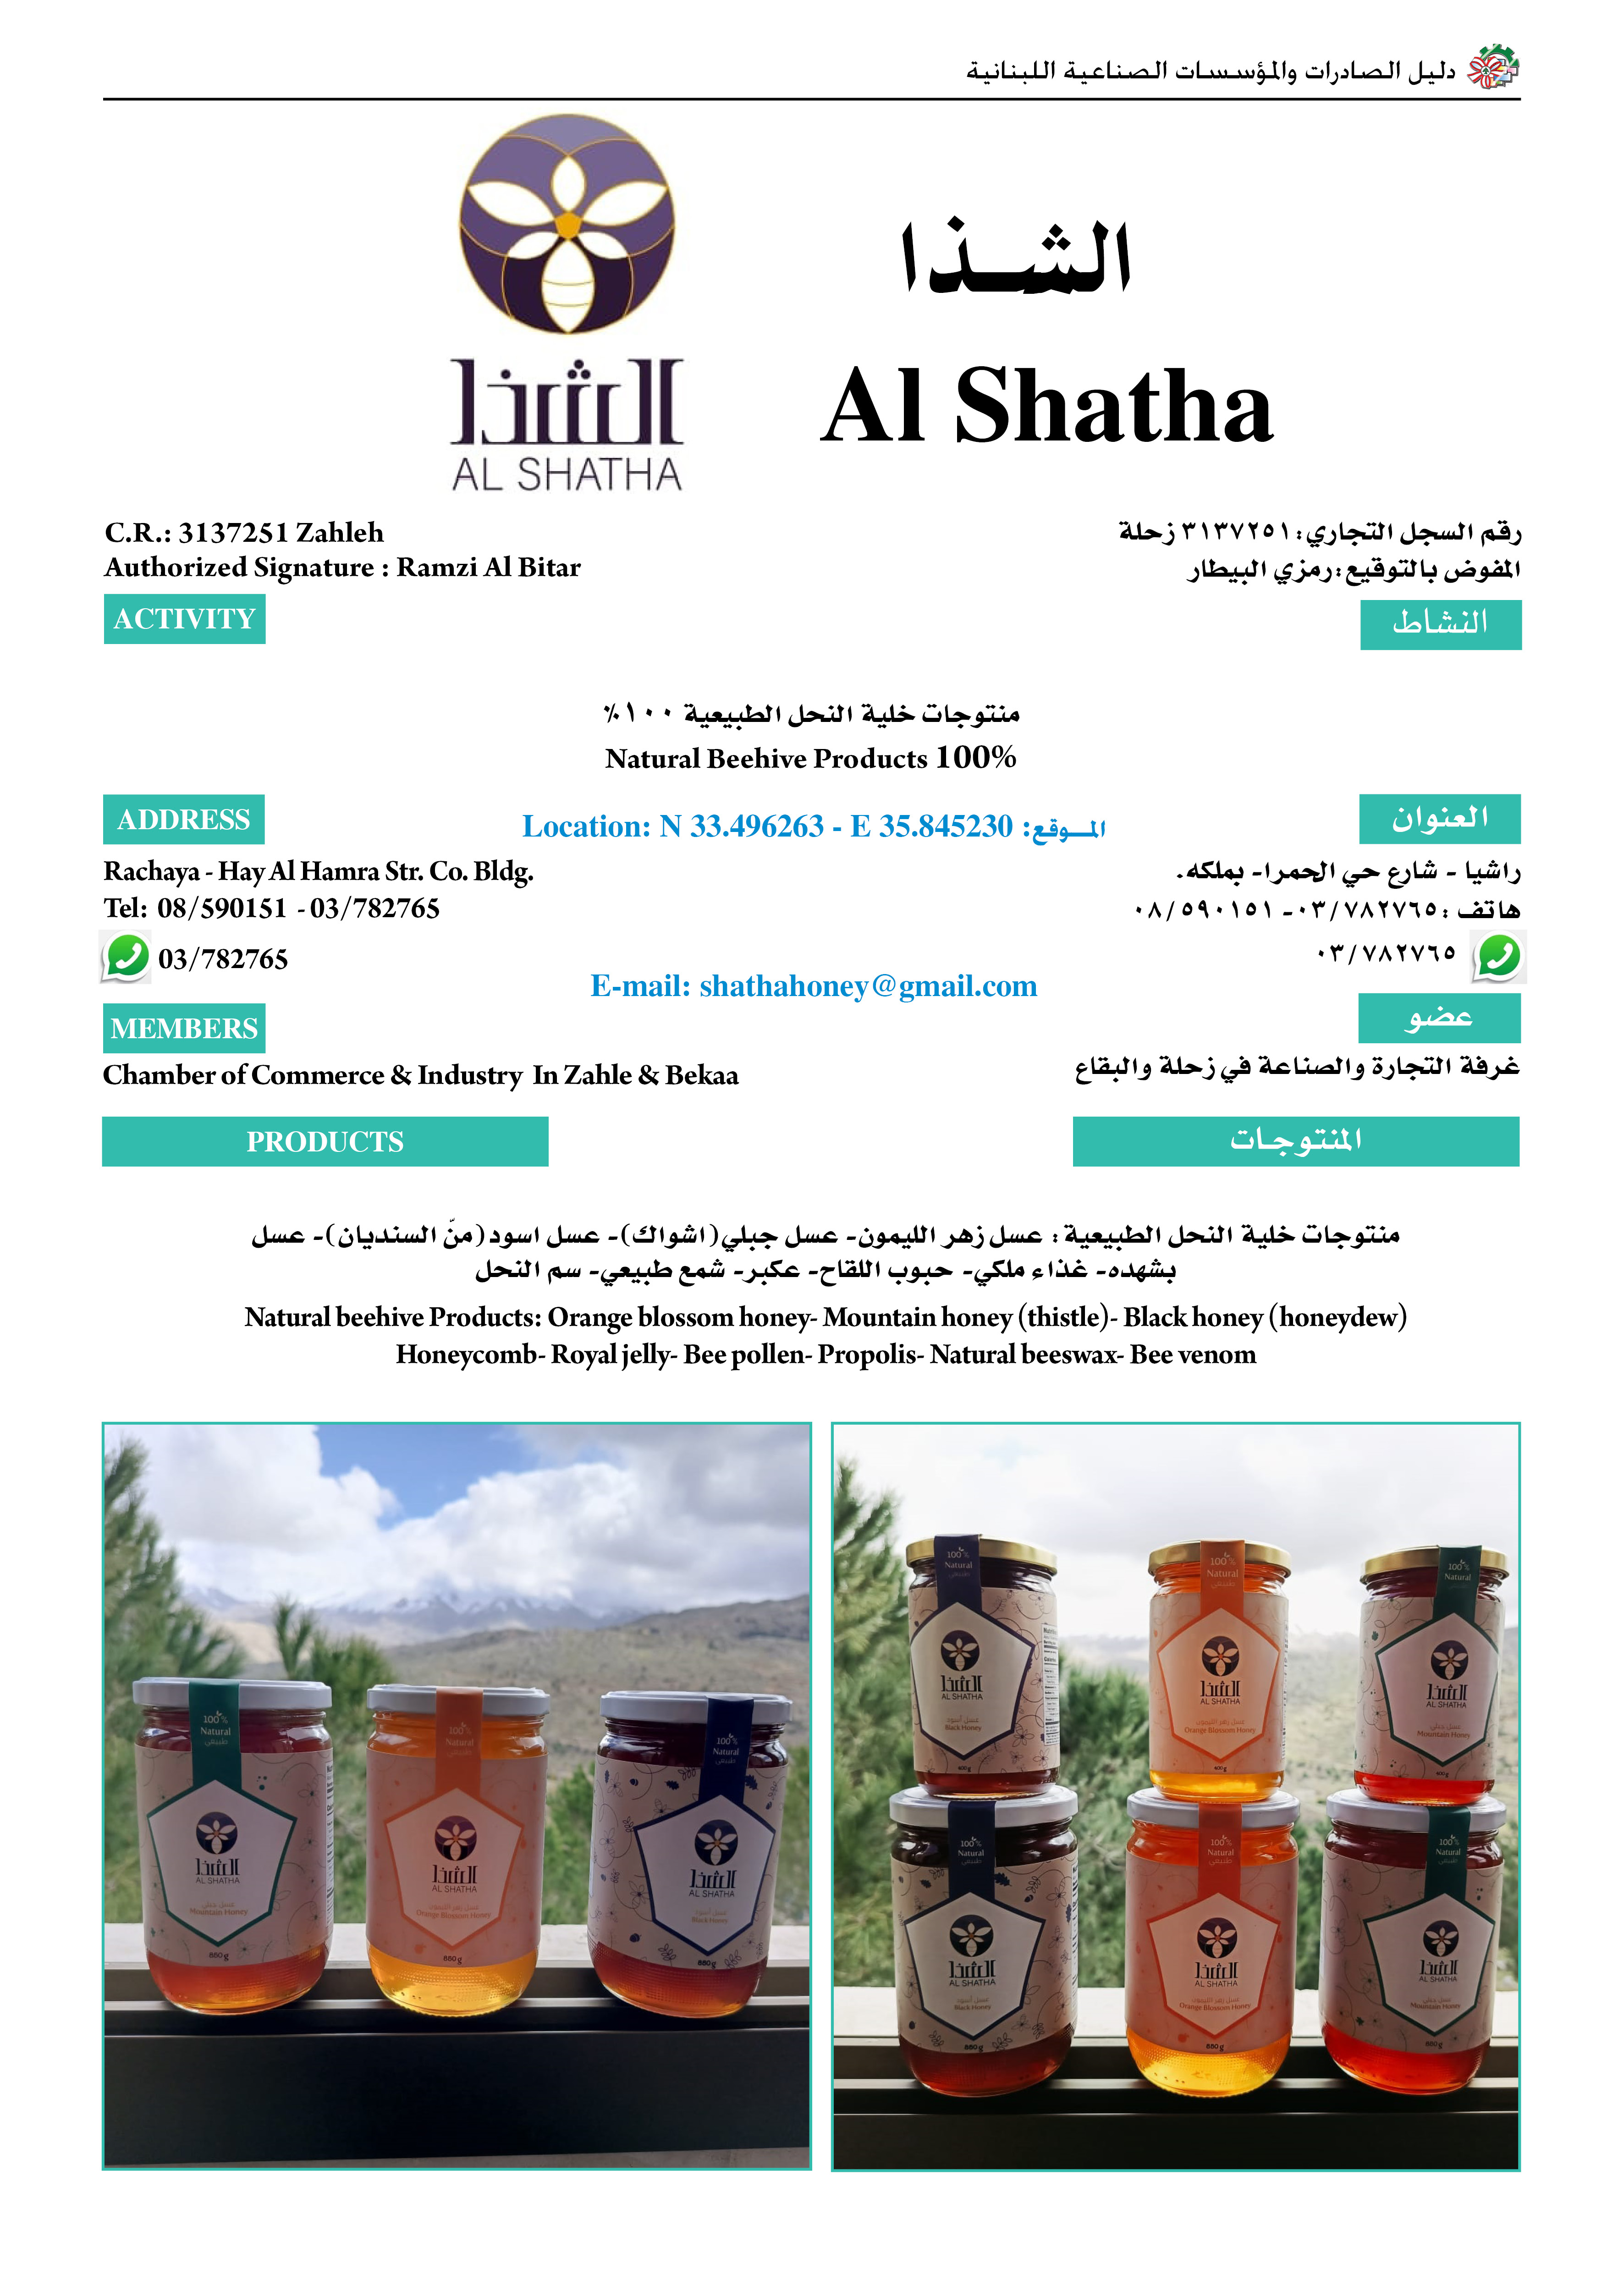  Al Shatha